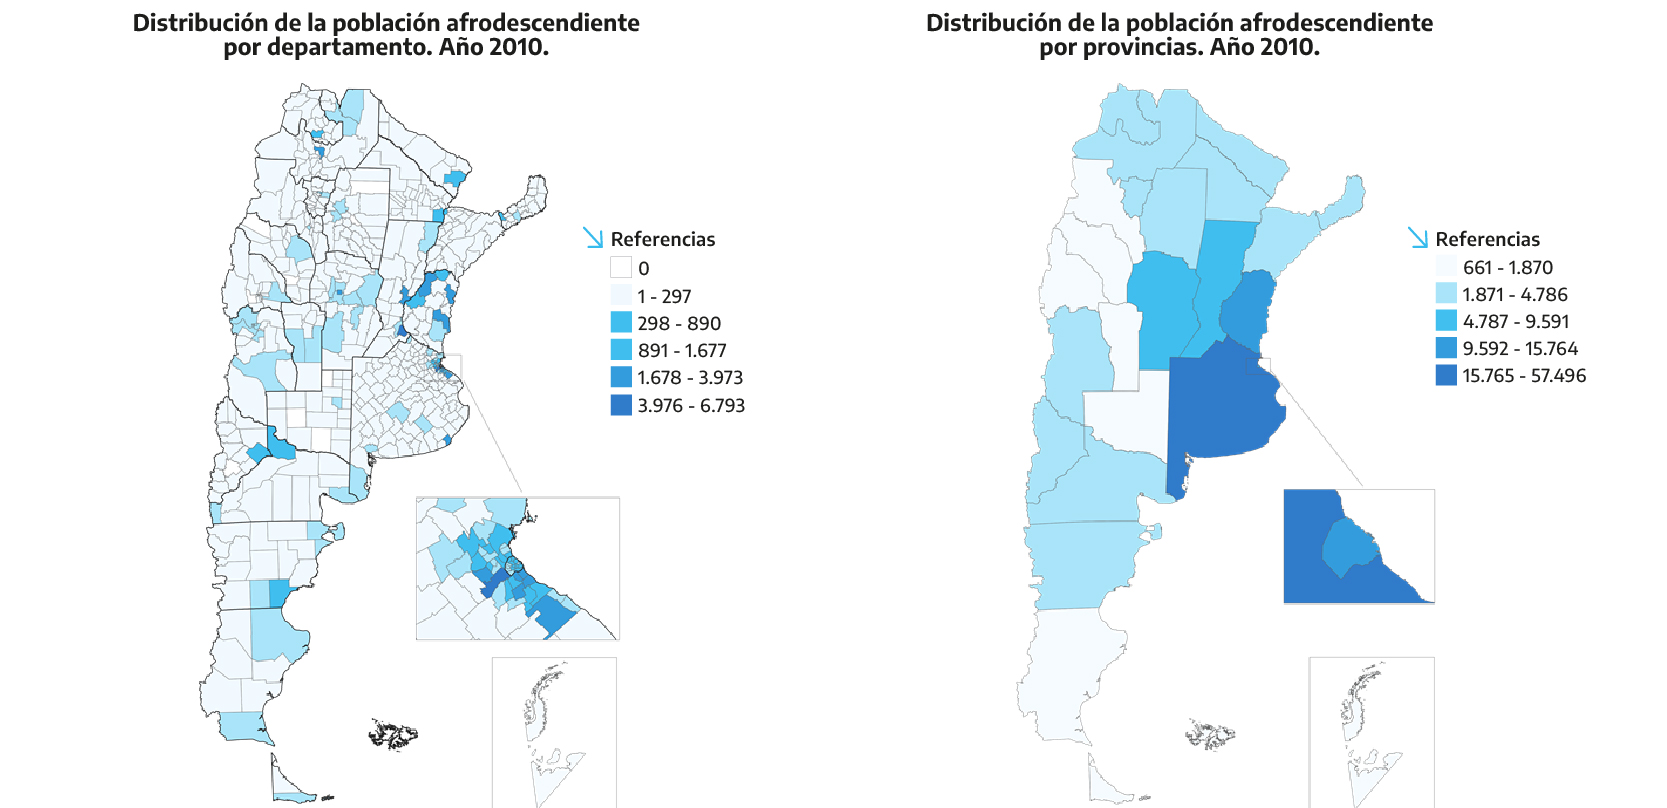 Distribución de la población afrodescendiente por departamentos y por provincias